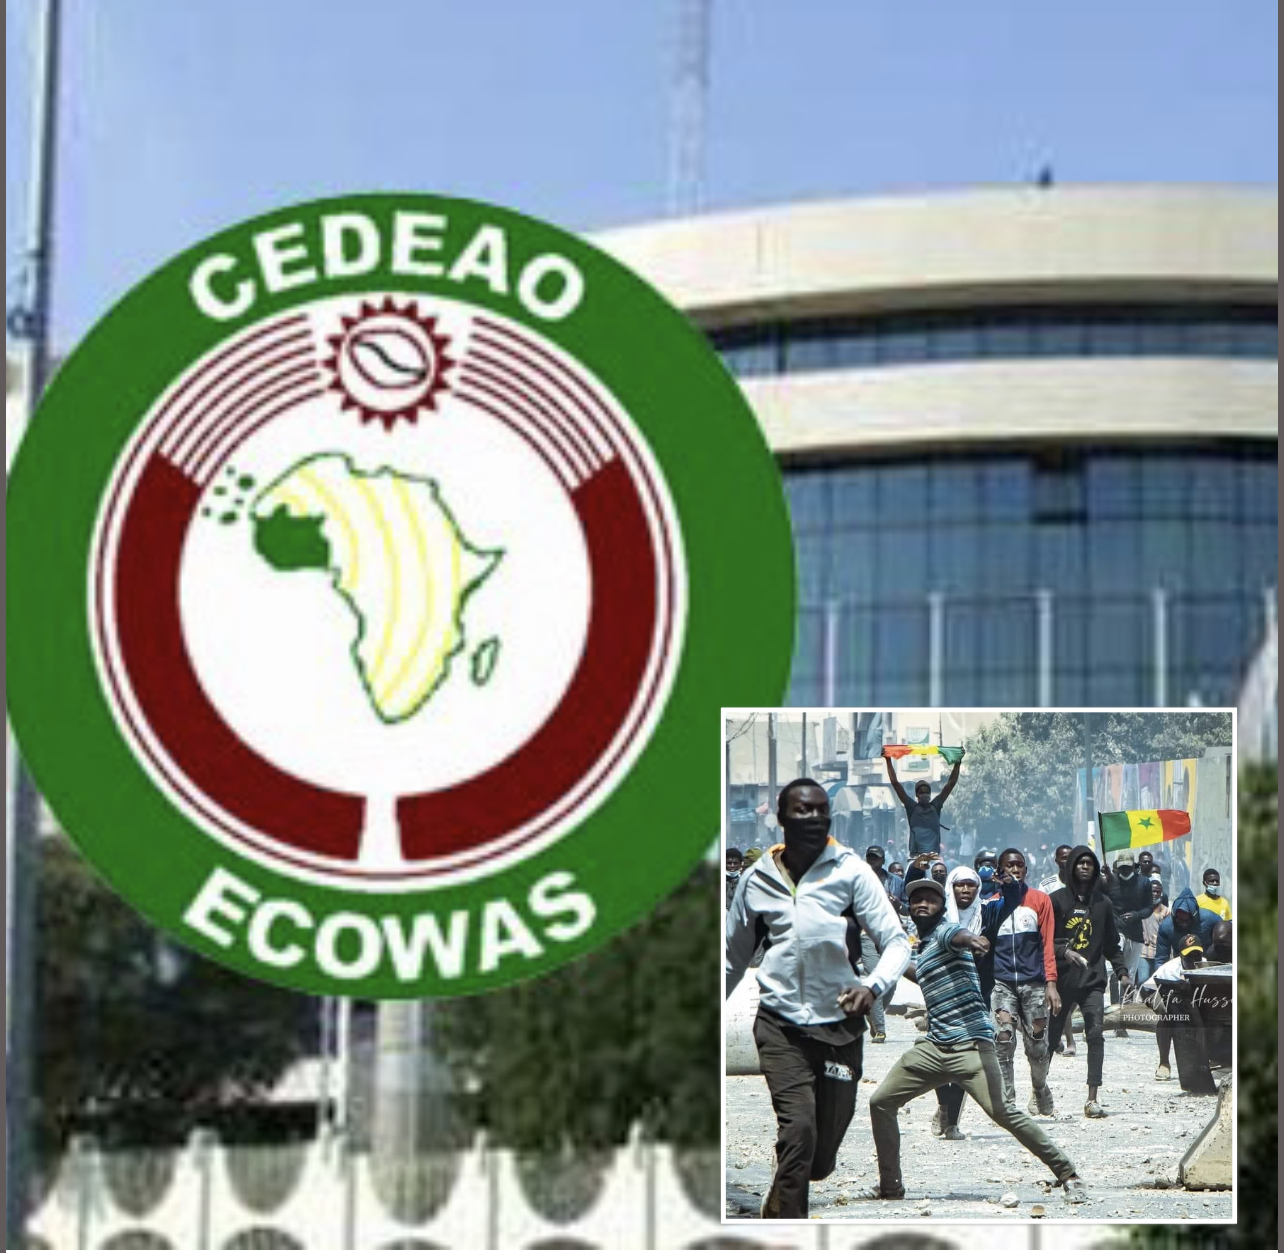 Manifestations prévues demain au Sénégal : Le CEDEAO exprime ses préoccupations et appelle à la retenue.